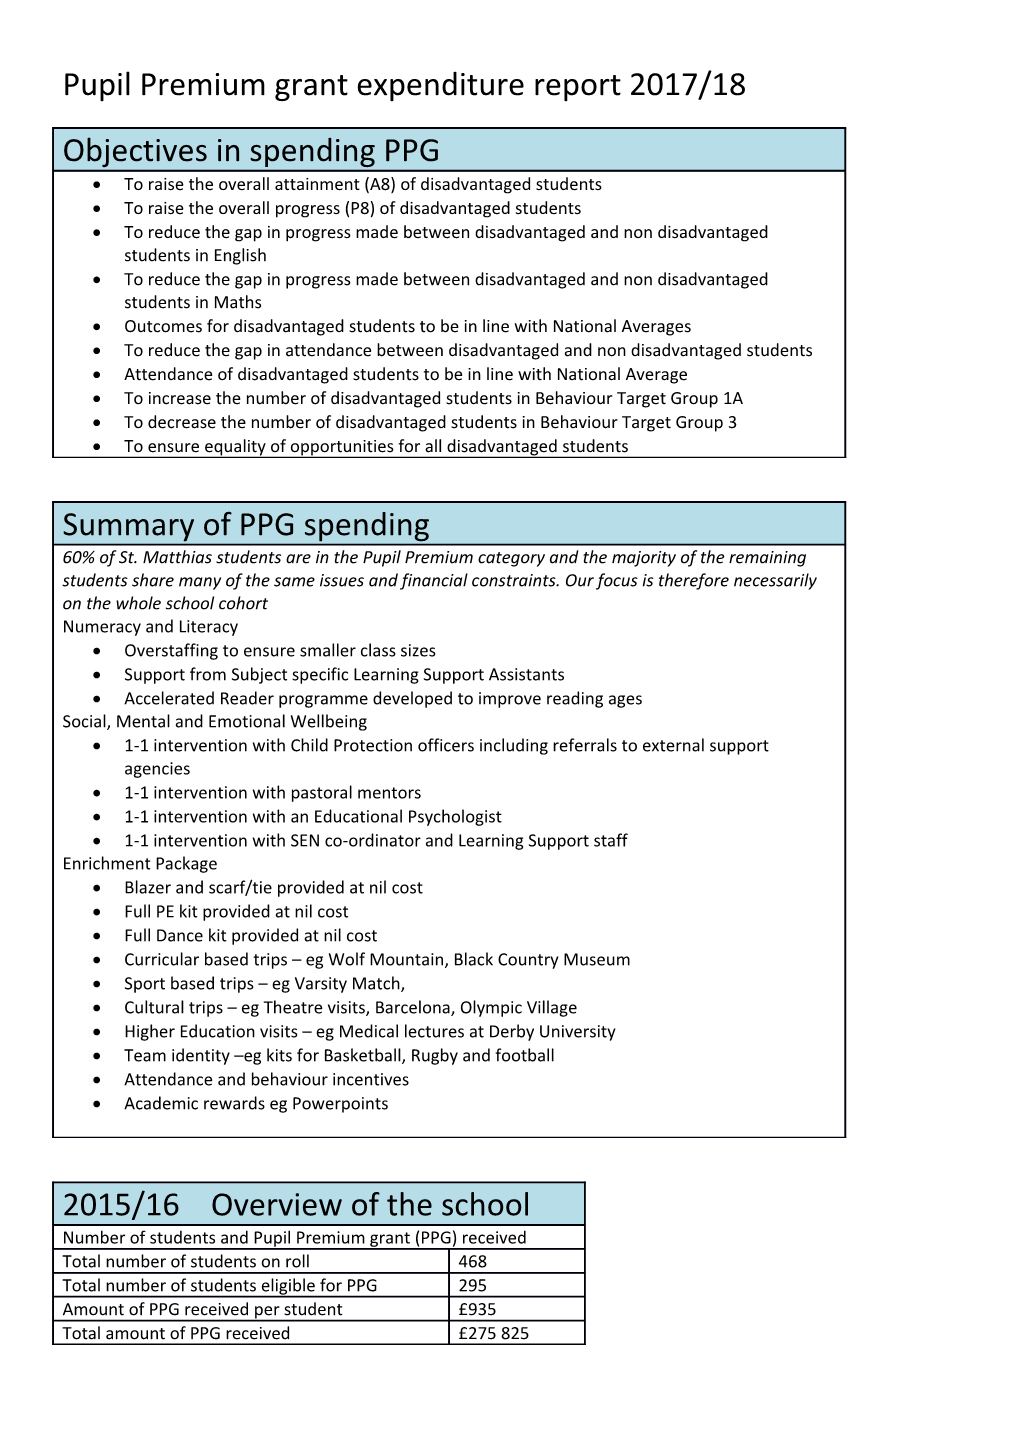 Pupil Premium Grant Expenditure Report 2017/18